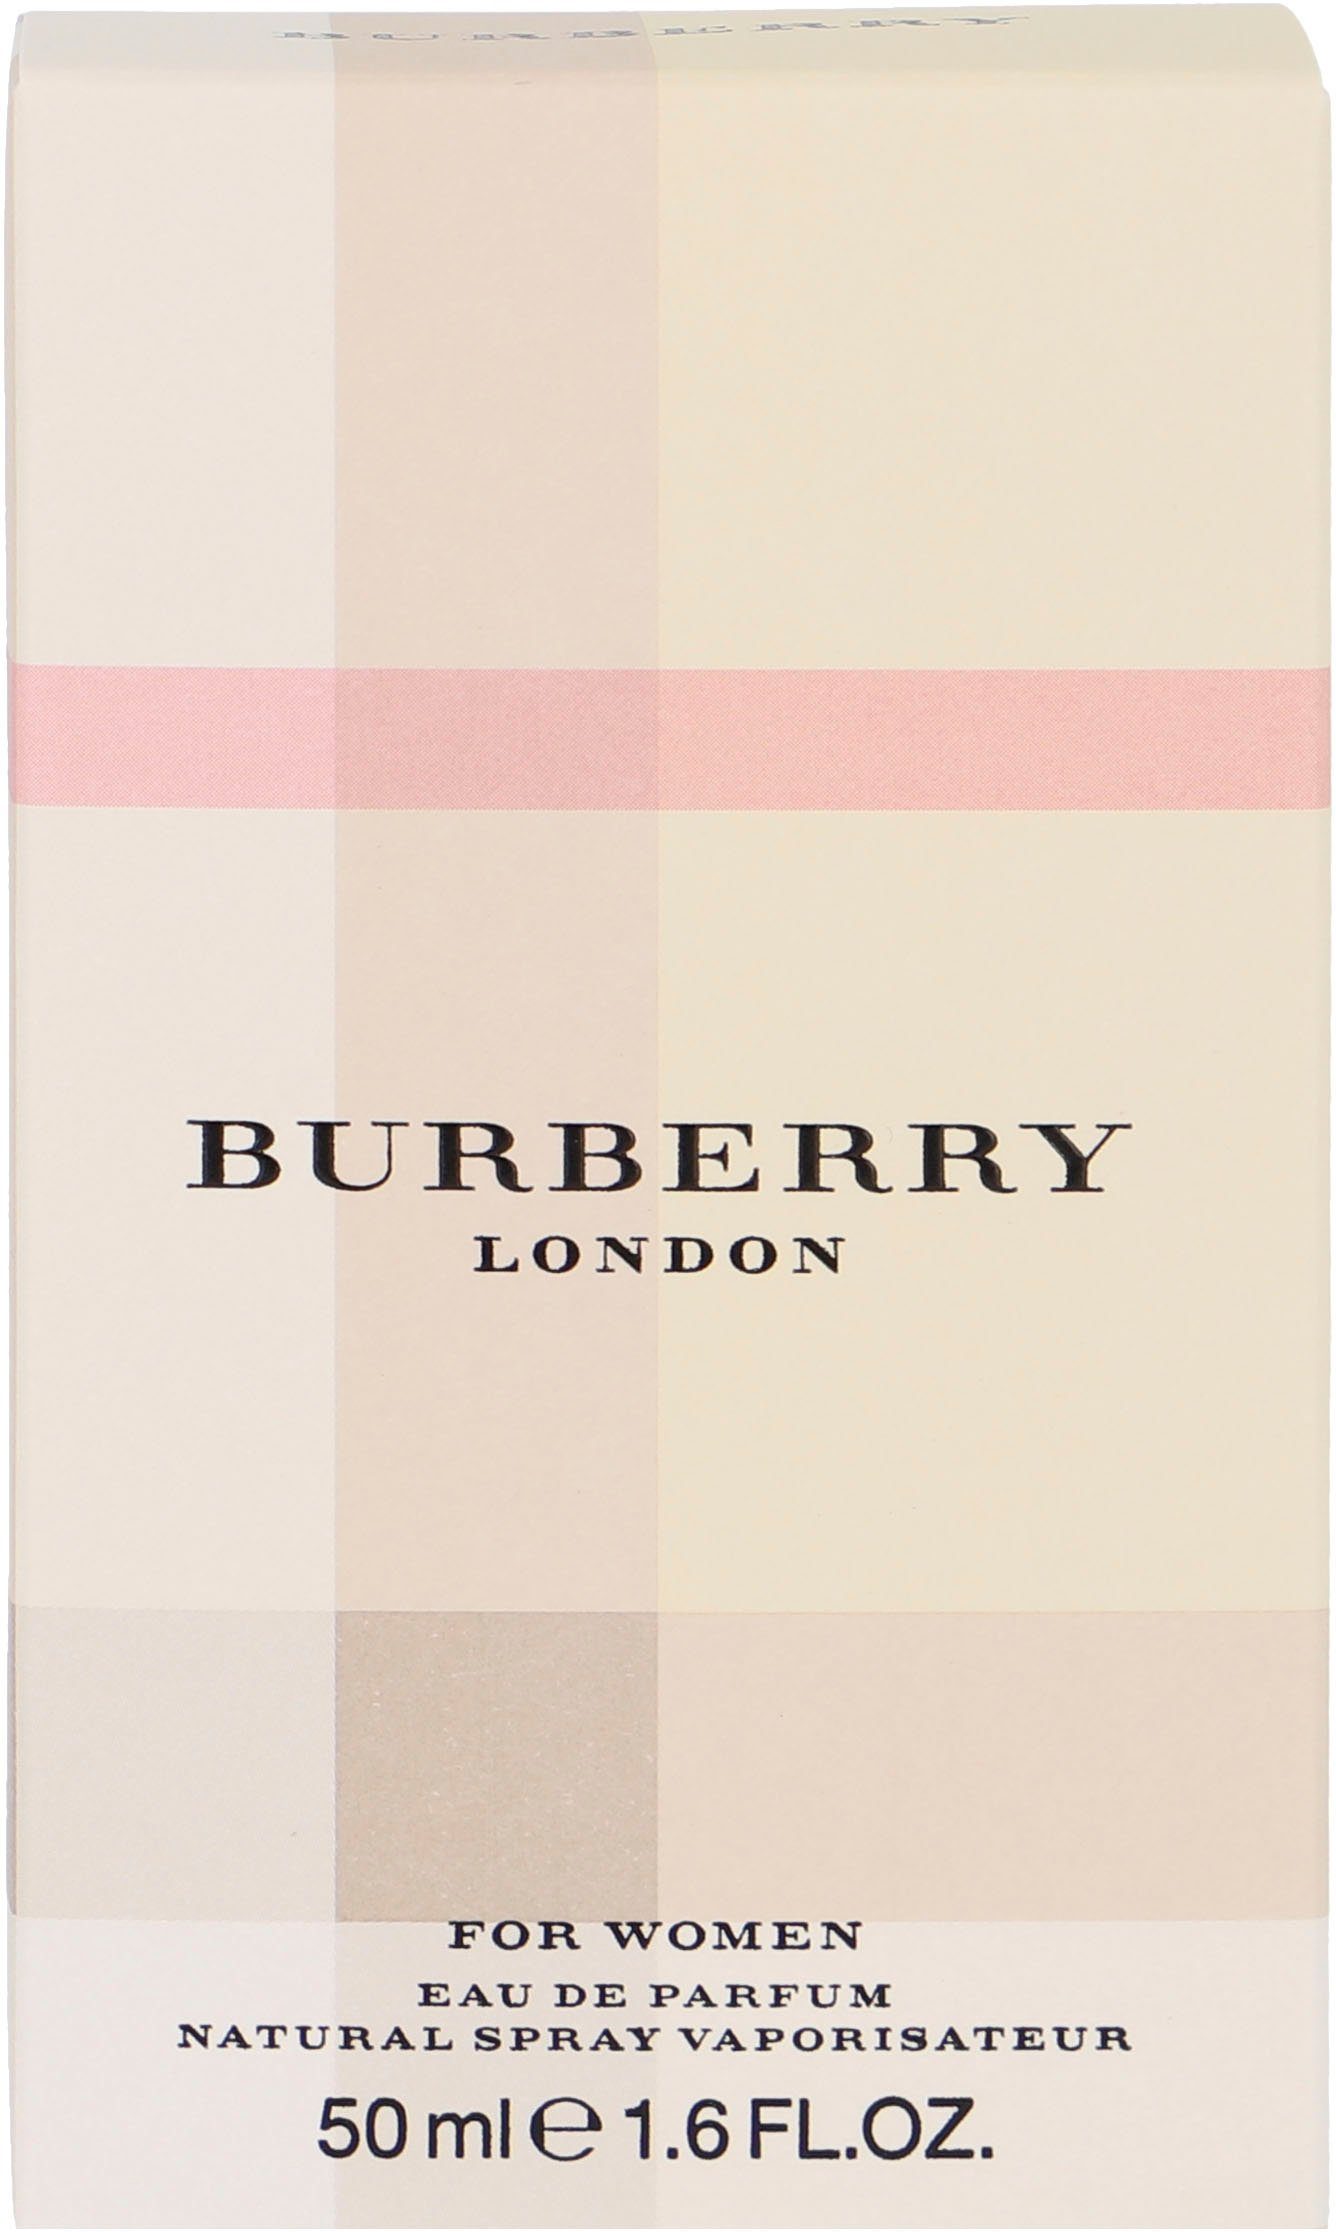 BURBERRY de London Parfum Eau